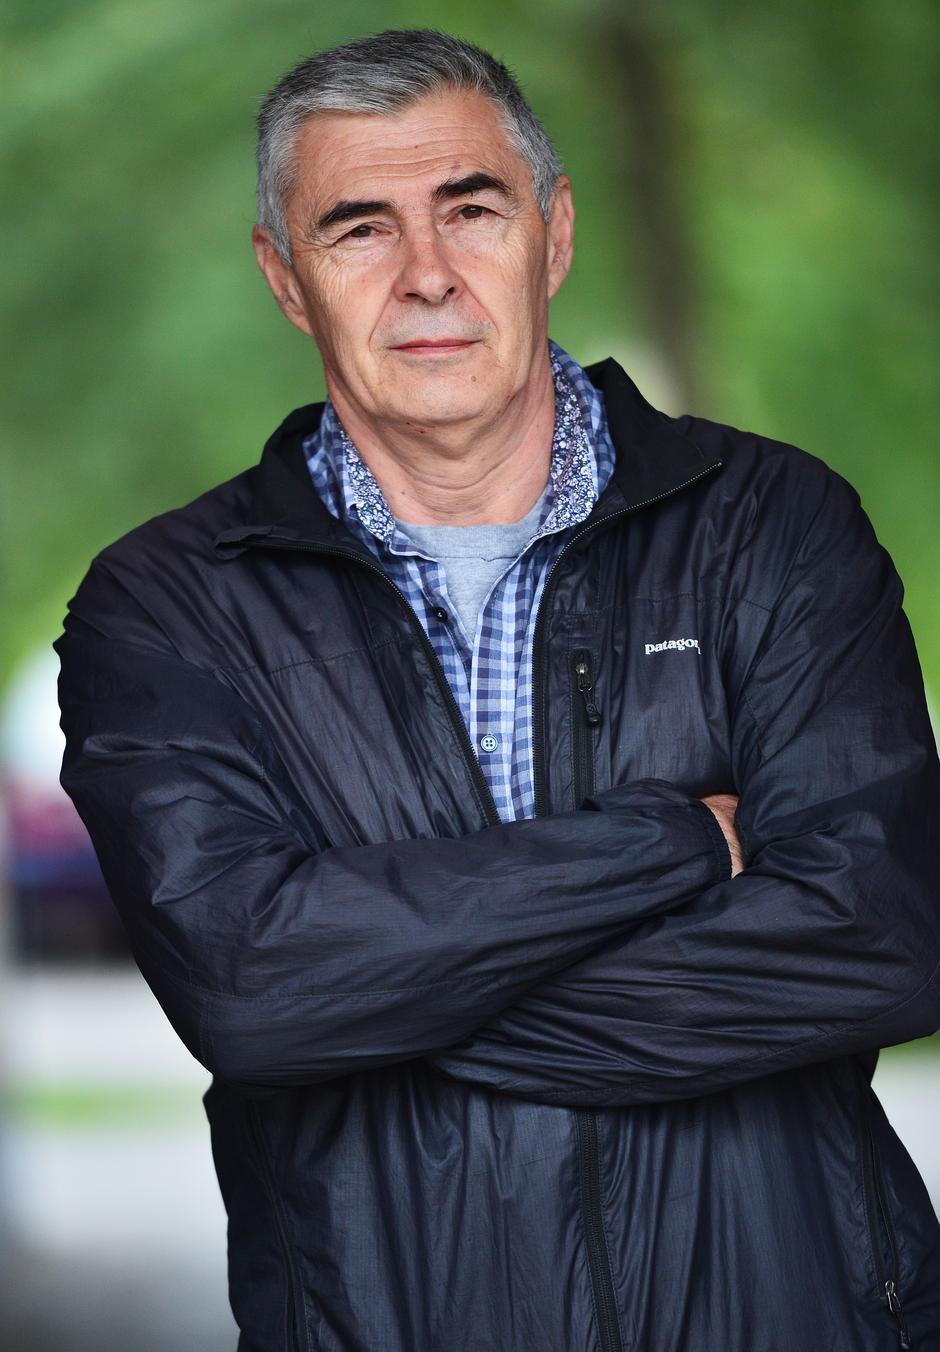 Željko Glasnović | Author: Marko Prpić (PIXSELL)